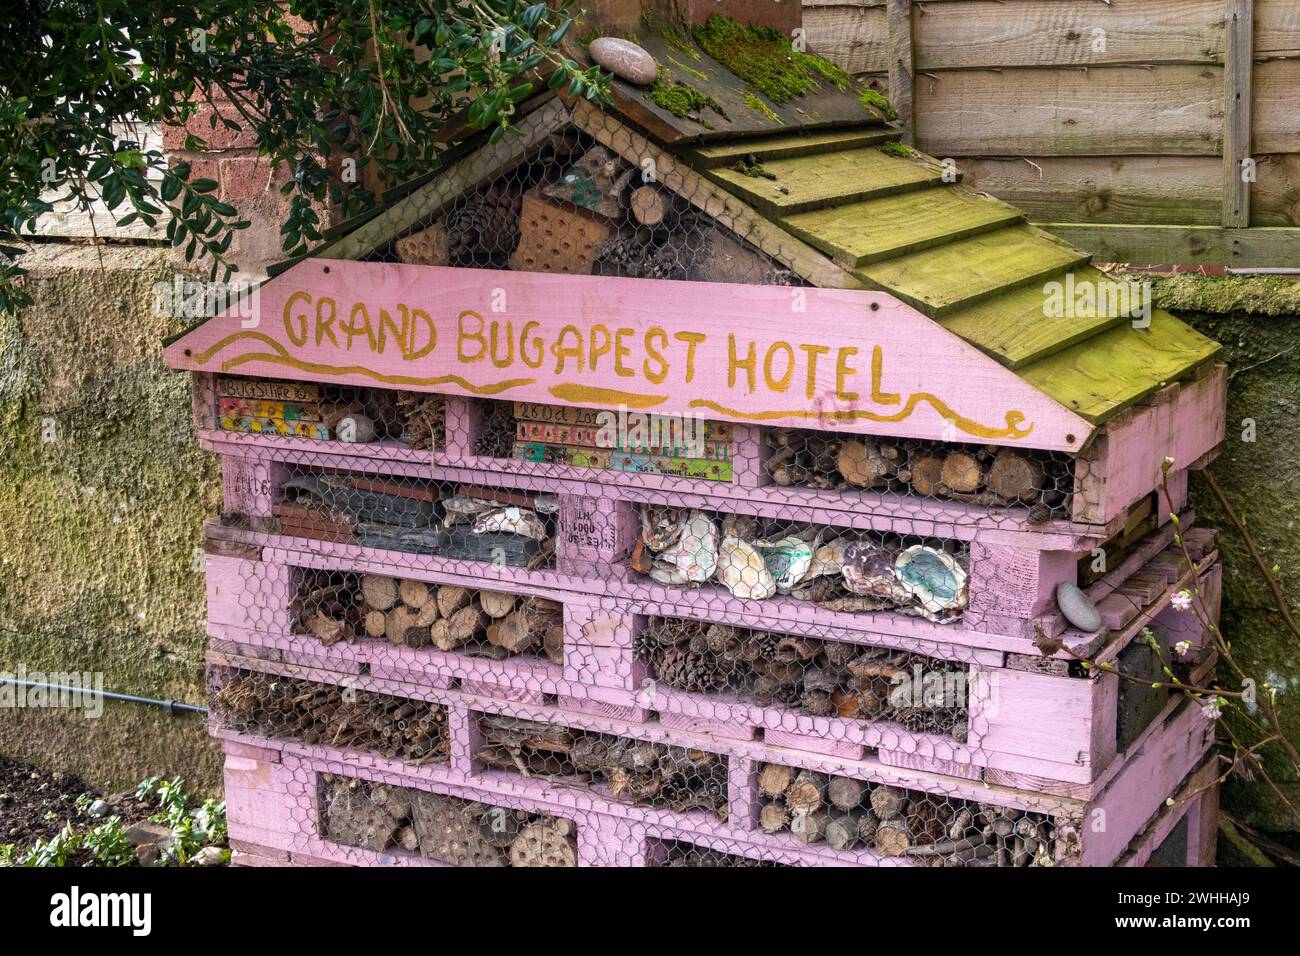 Grand hôtel d'insectes, maison d'abri d'insectes, à Sidmouth, Devon.The Grand Bugdest Hôtel. Abri d'hiver pour insectes. Banque D'Images